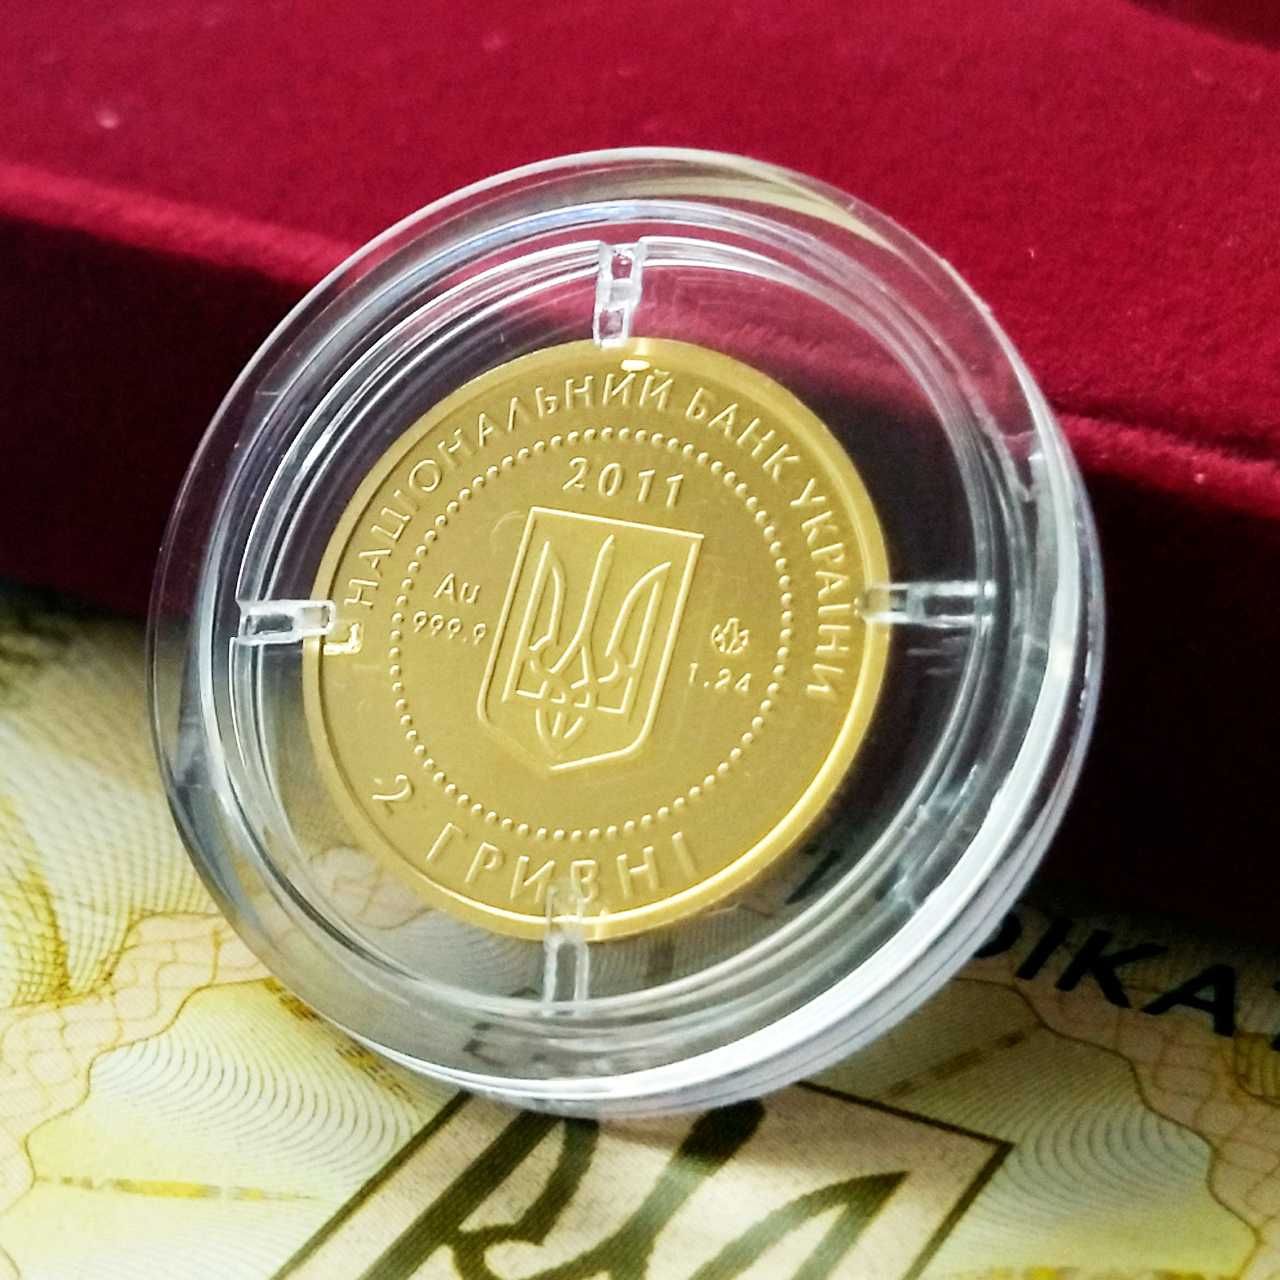 Золота монета НБУ "Скіфське золото. Олень", 1,24 г чистого золота,2011